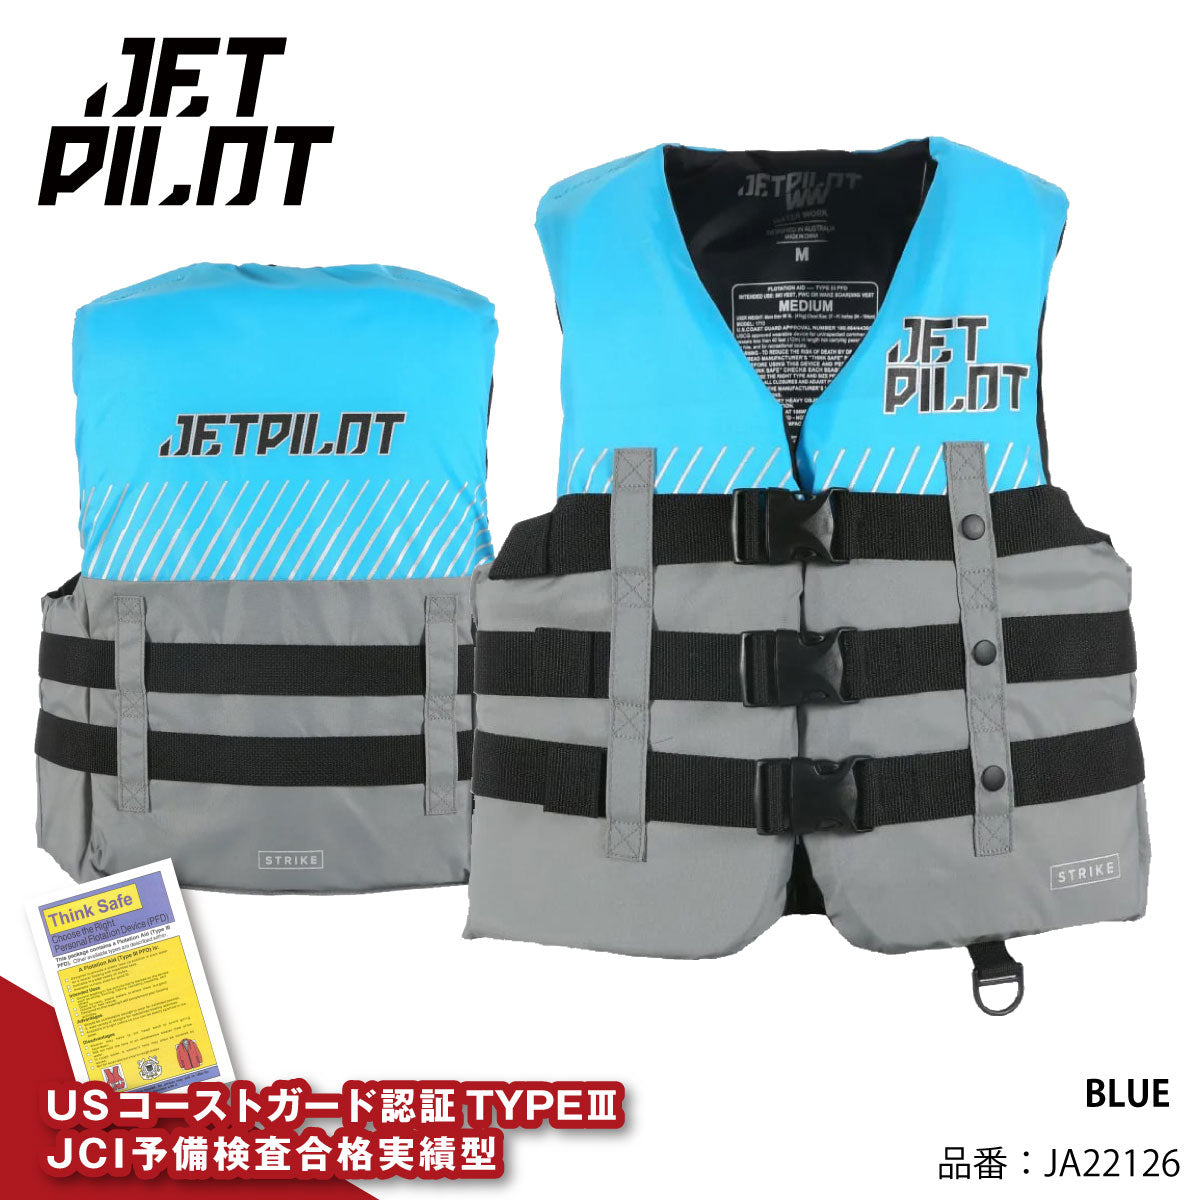 JETPILOT ライフジャケット 小型船舶特殊 JA22126 正規品 STRIKE JCI